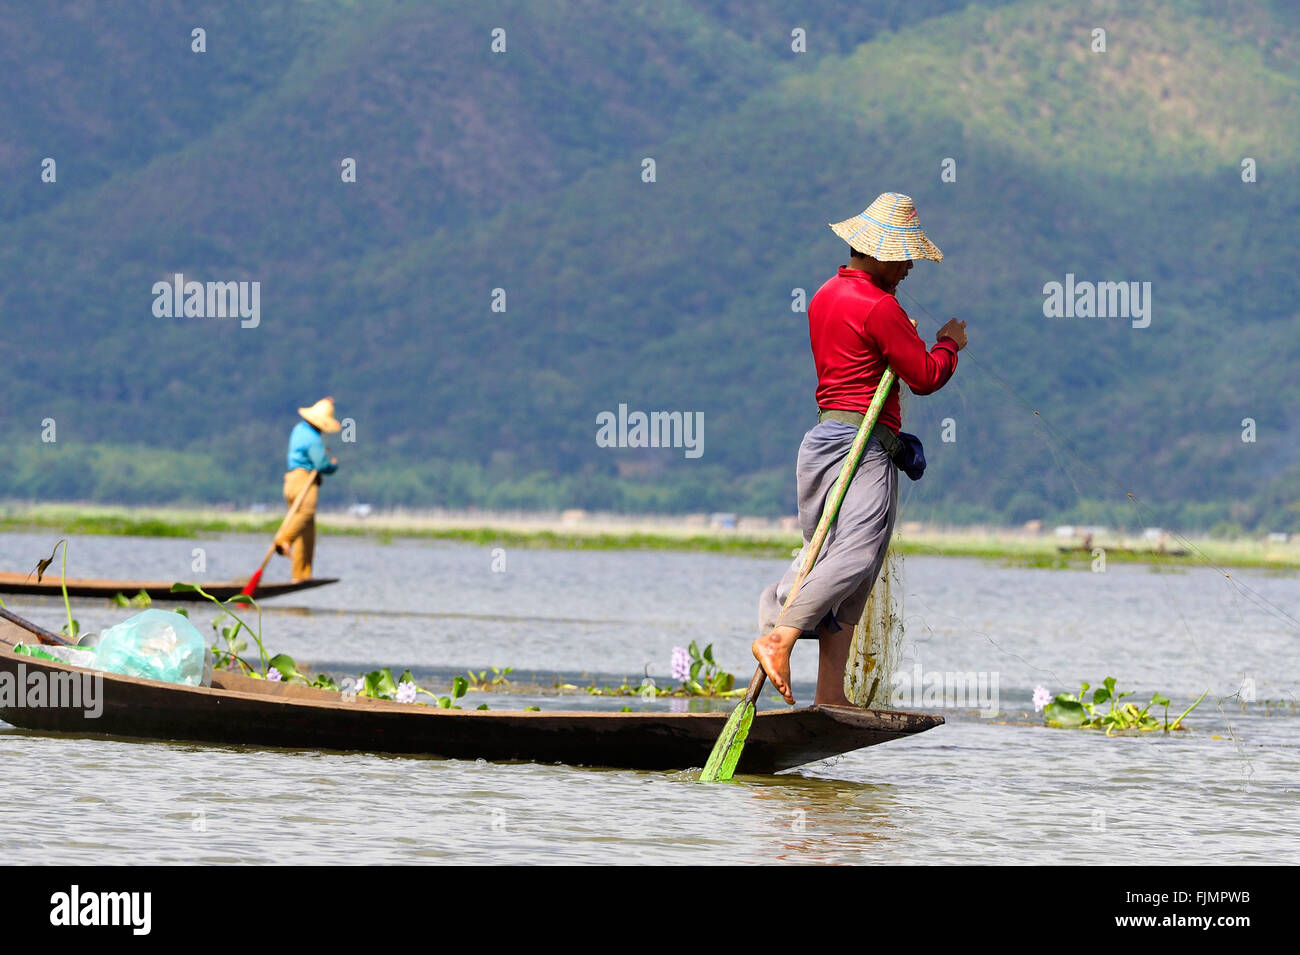 Fishing, fisherman, Myanmar. Man traditional fishing at 'Inle Lake', Myanmar, Asia Stock Photo